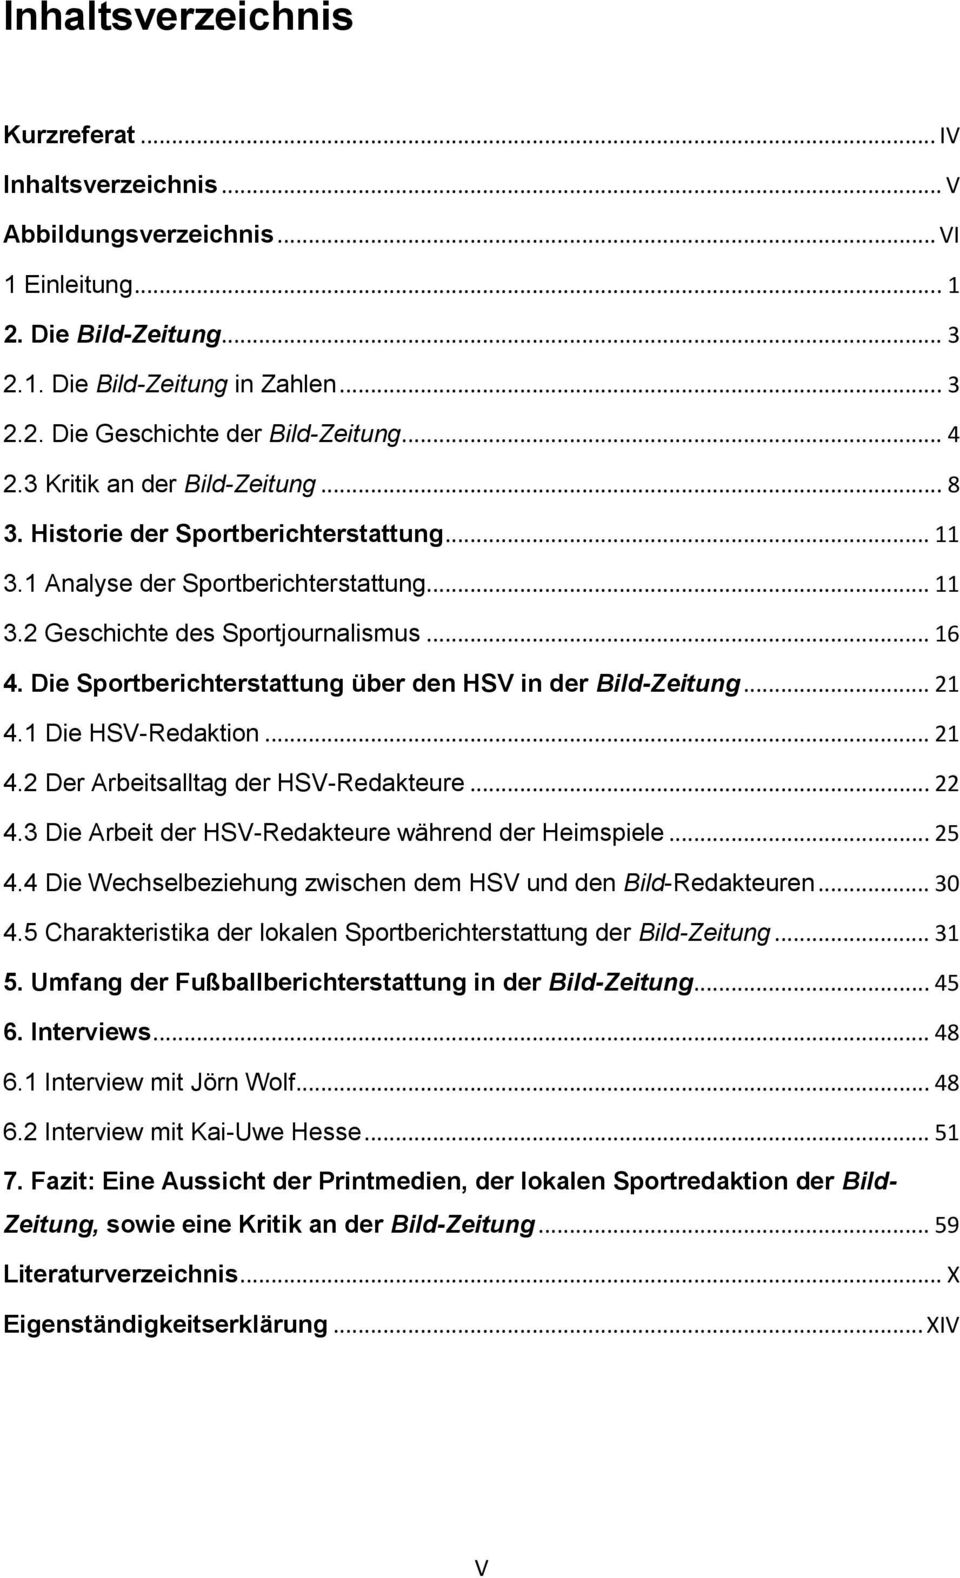 Die Sportberichterstattung über den HSV in der Bild-Zeitung... 21 4.1 Die HSV-Redaktion... 21 4.2 Der Arbeitsalltag der HSV-Redakteure... 22 4.3 Die Arbeit der HSV-Redakteure während der Heimspiele.